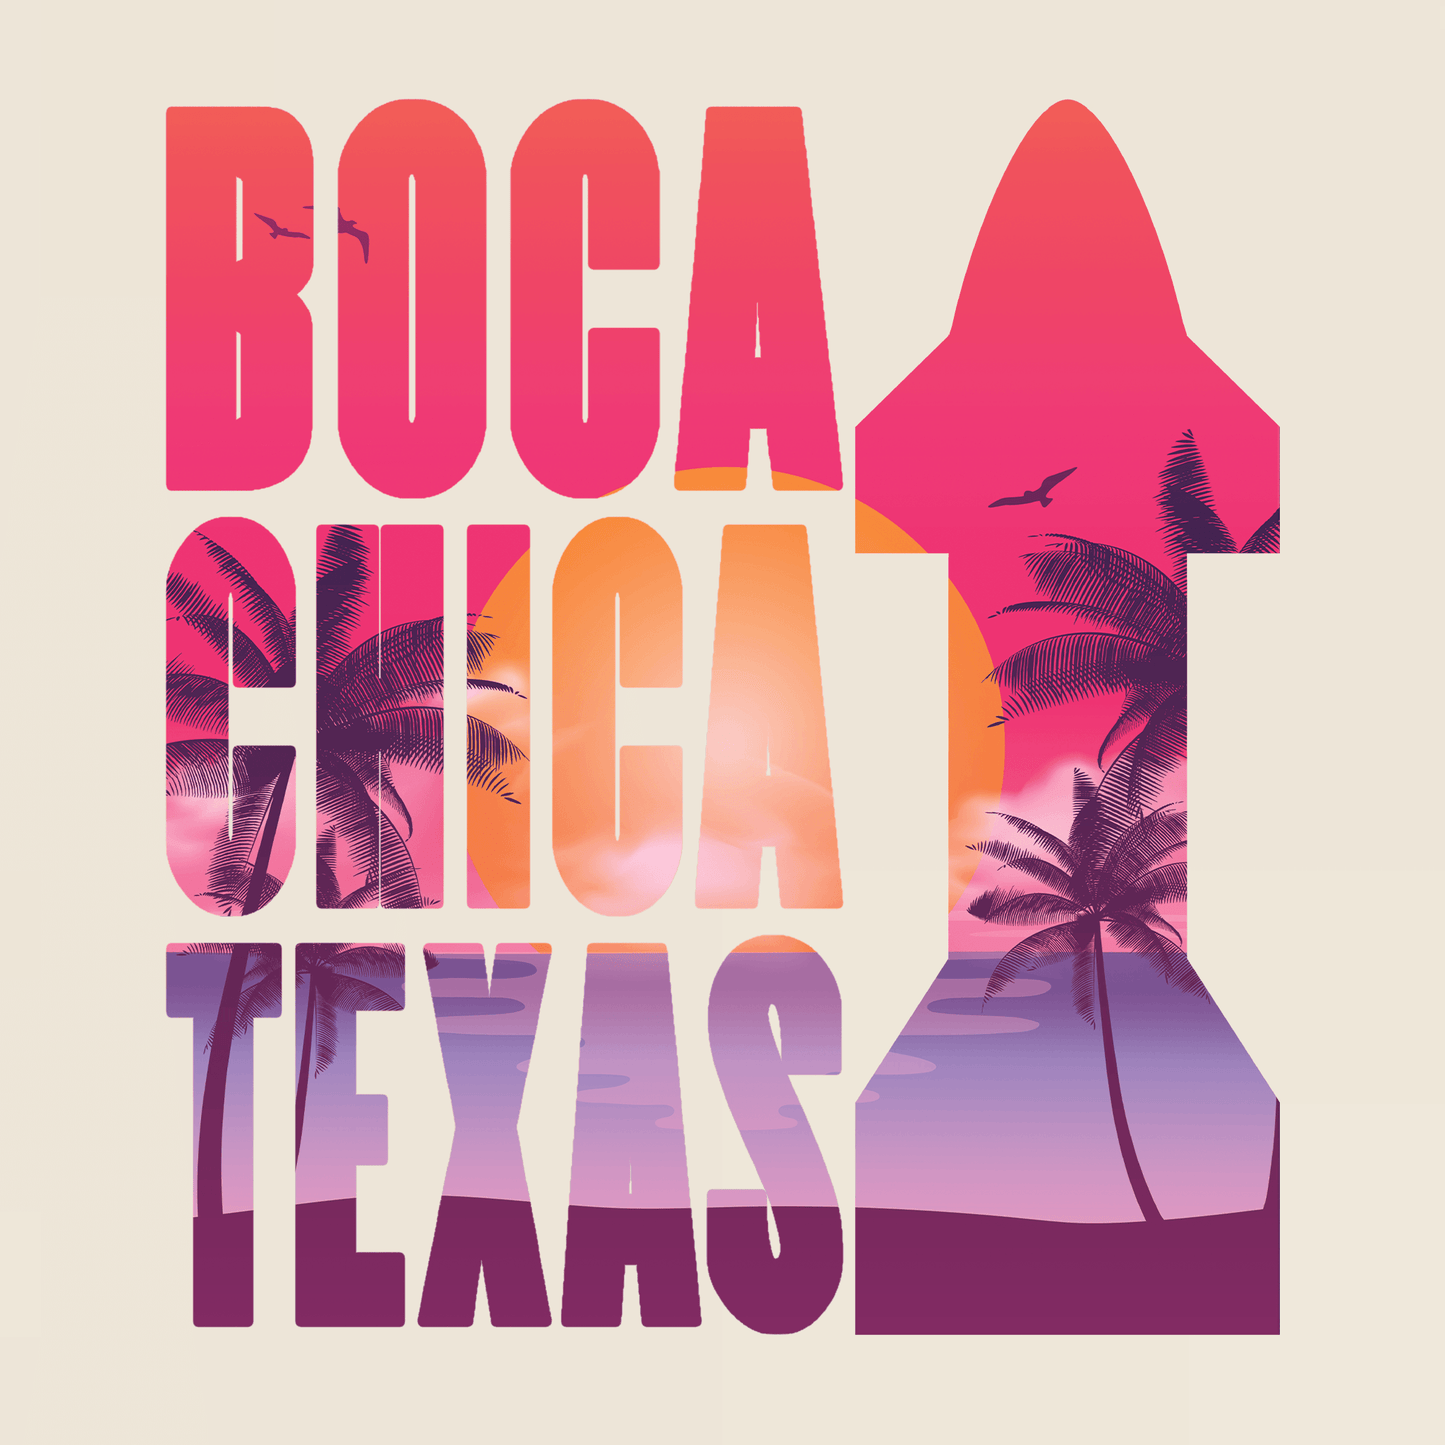 Boca Chica Texas T-Shirt